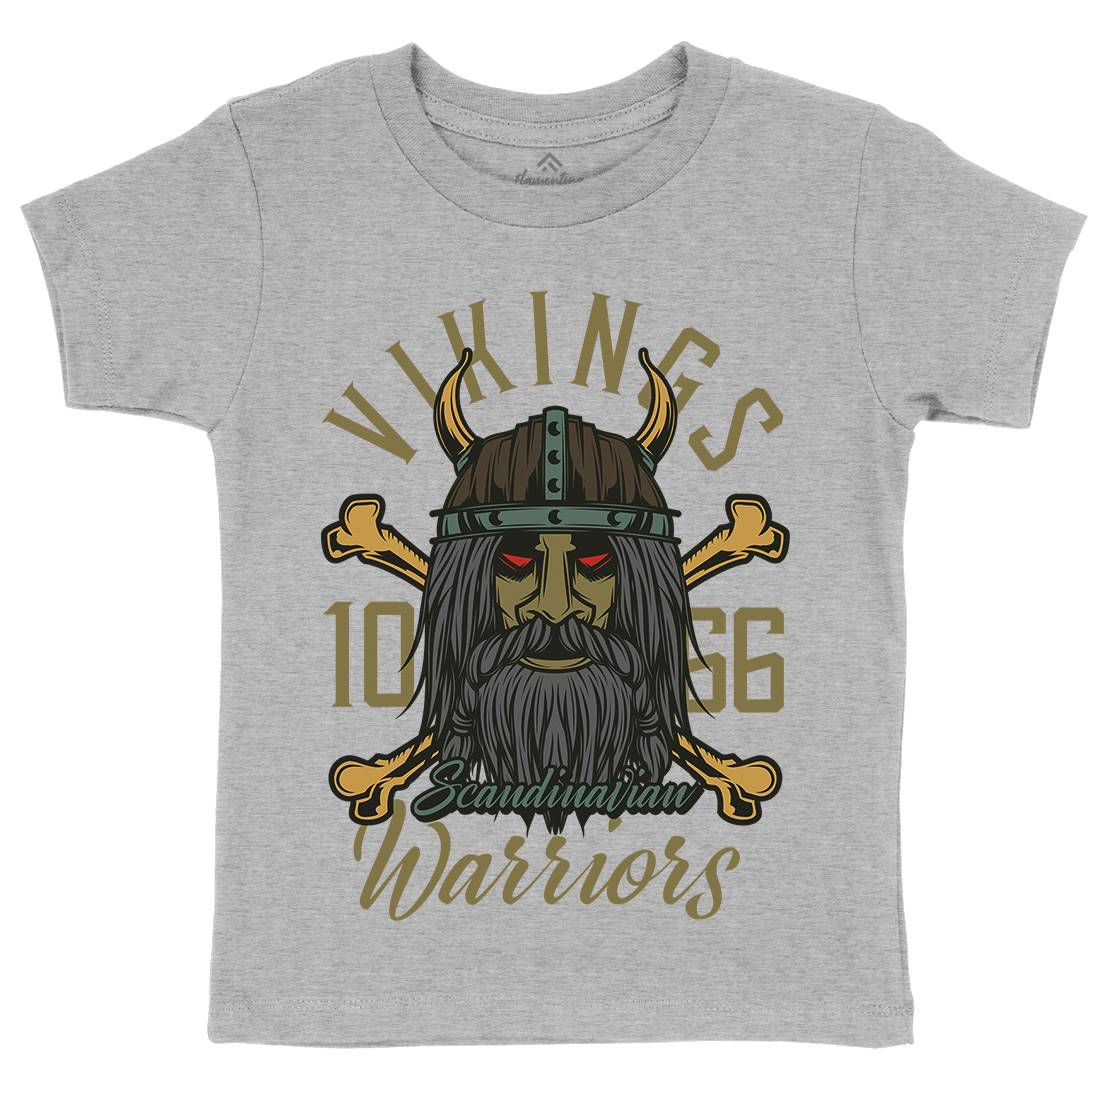 Viking Kids Crew Neck T-Shirt Warriors C893